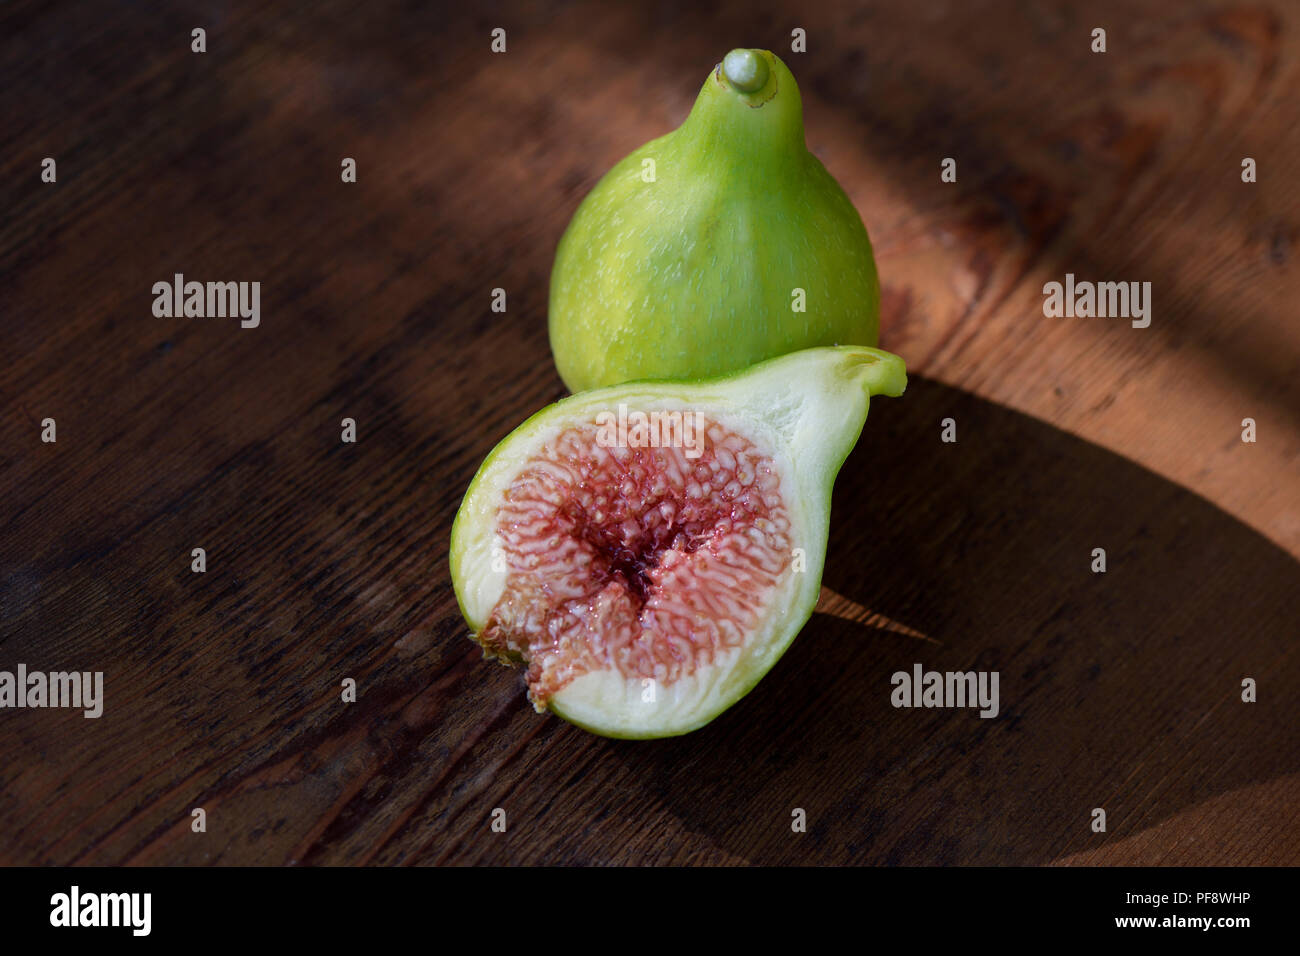 Orgánico, recién elegido Kadota maduros higos en una tabla, una fruta rebanada por la mitad mostrando pulpa púrpura, comida artística bodegón sobre fondo de madera Foto de stock